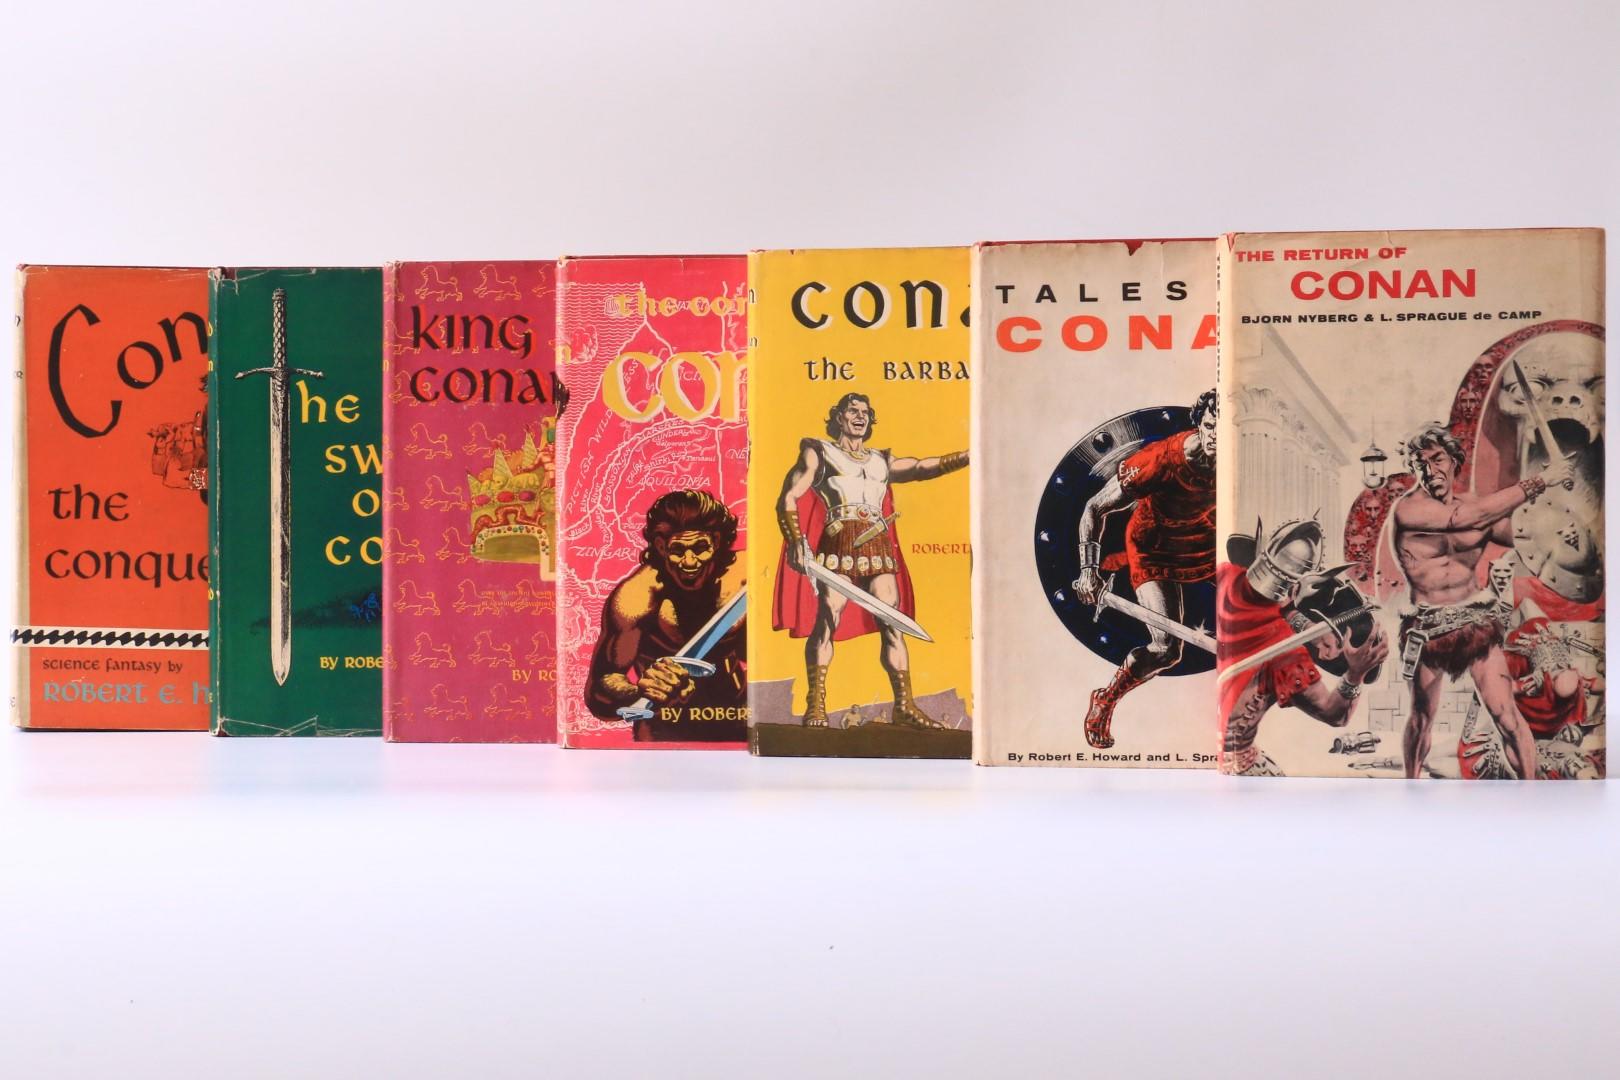 Robert E. Howard, Bjorn Nyberg and L. Sprague De Camp. - The Conan Books [comprising] Conan the Conqueror, The Sword of Conan, The Coming of Conan, King Conan, Conan the Barbarian, Tales of Conan, and The Return of Conan. - Gnome Press, 1950-1957, First Edition.